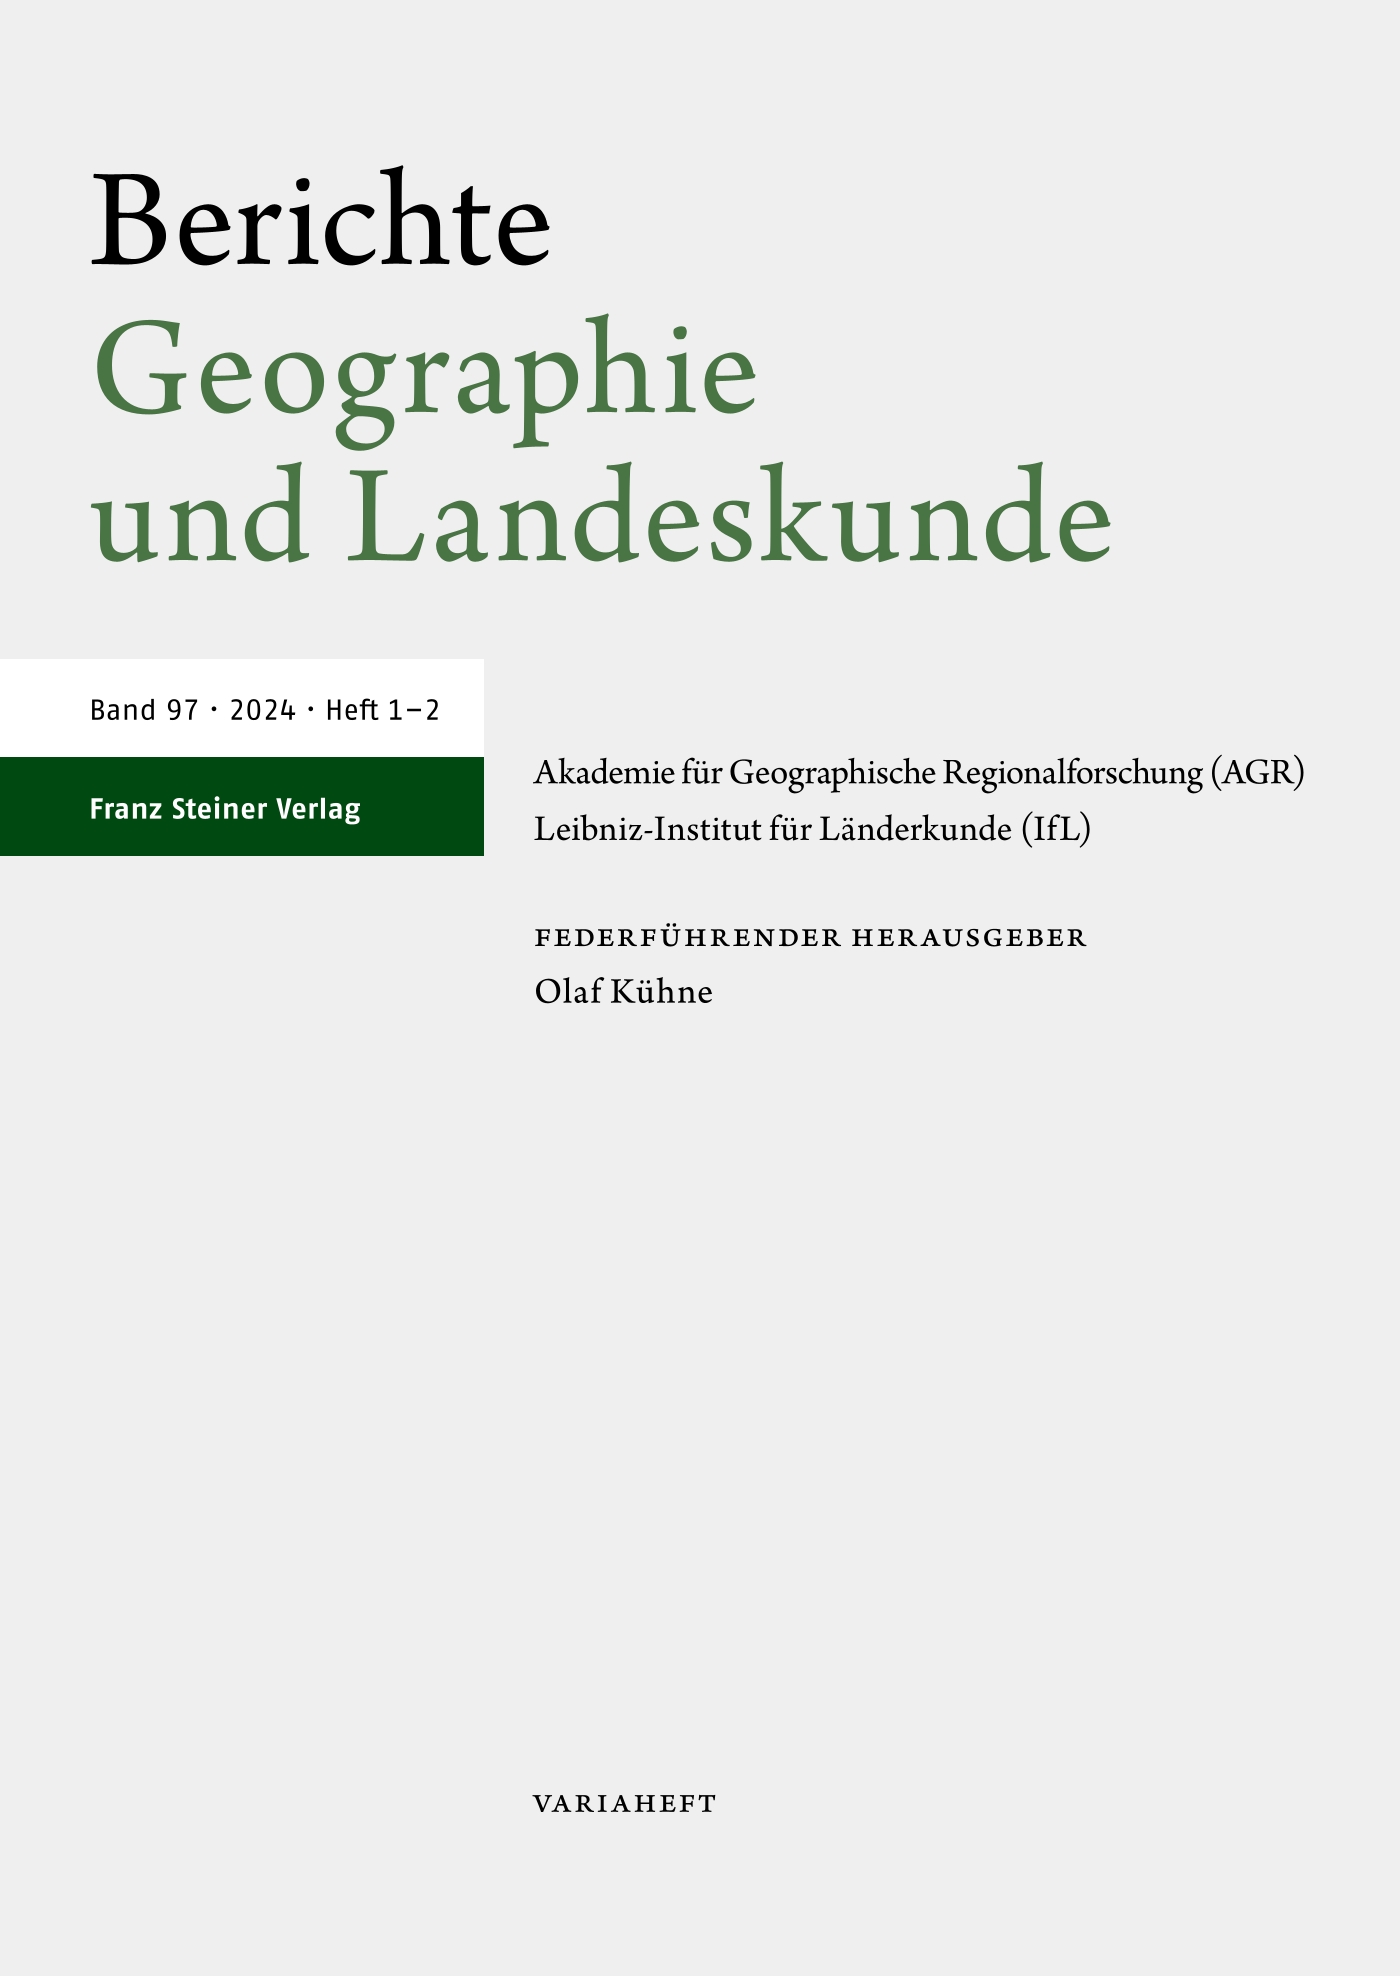 Berichte. Geographie und Landeskunde - print + online